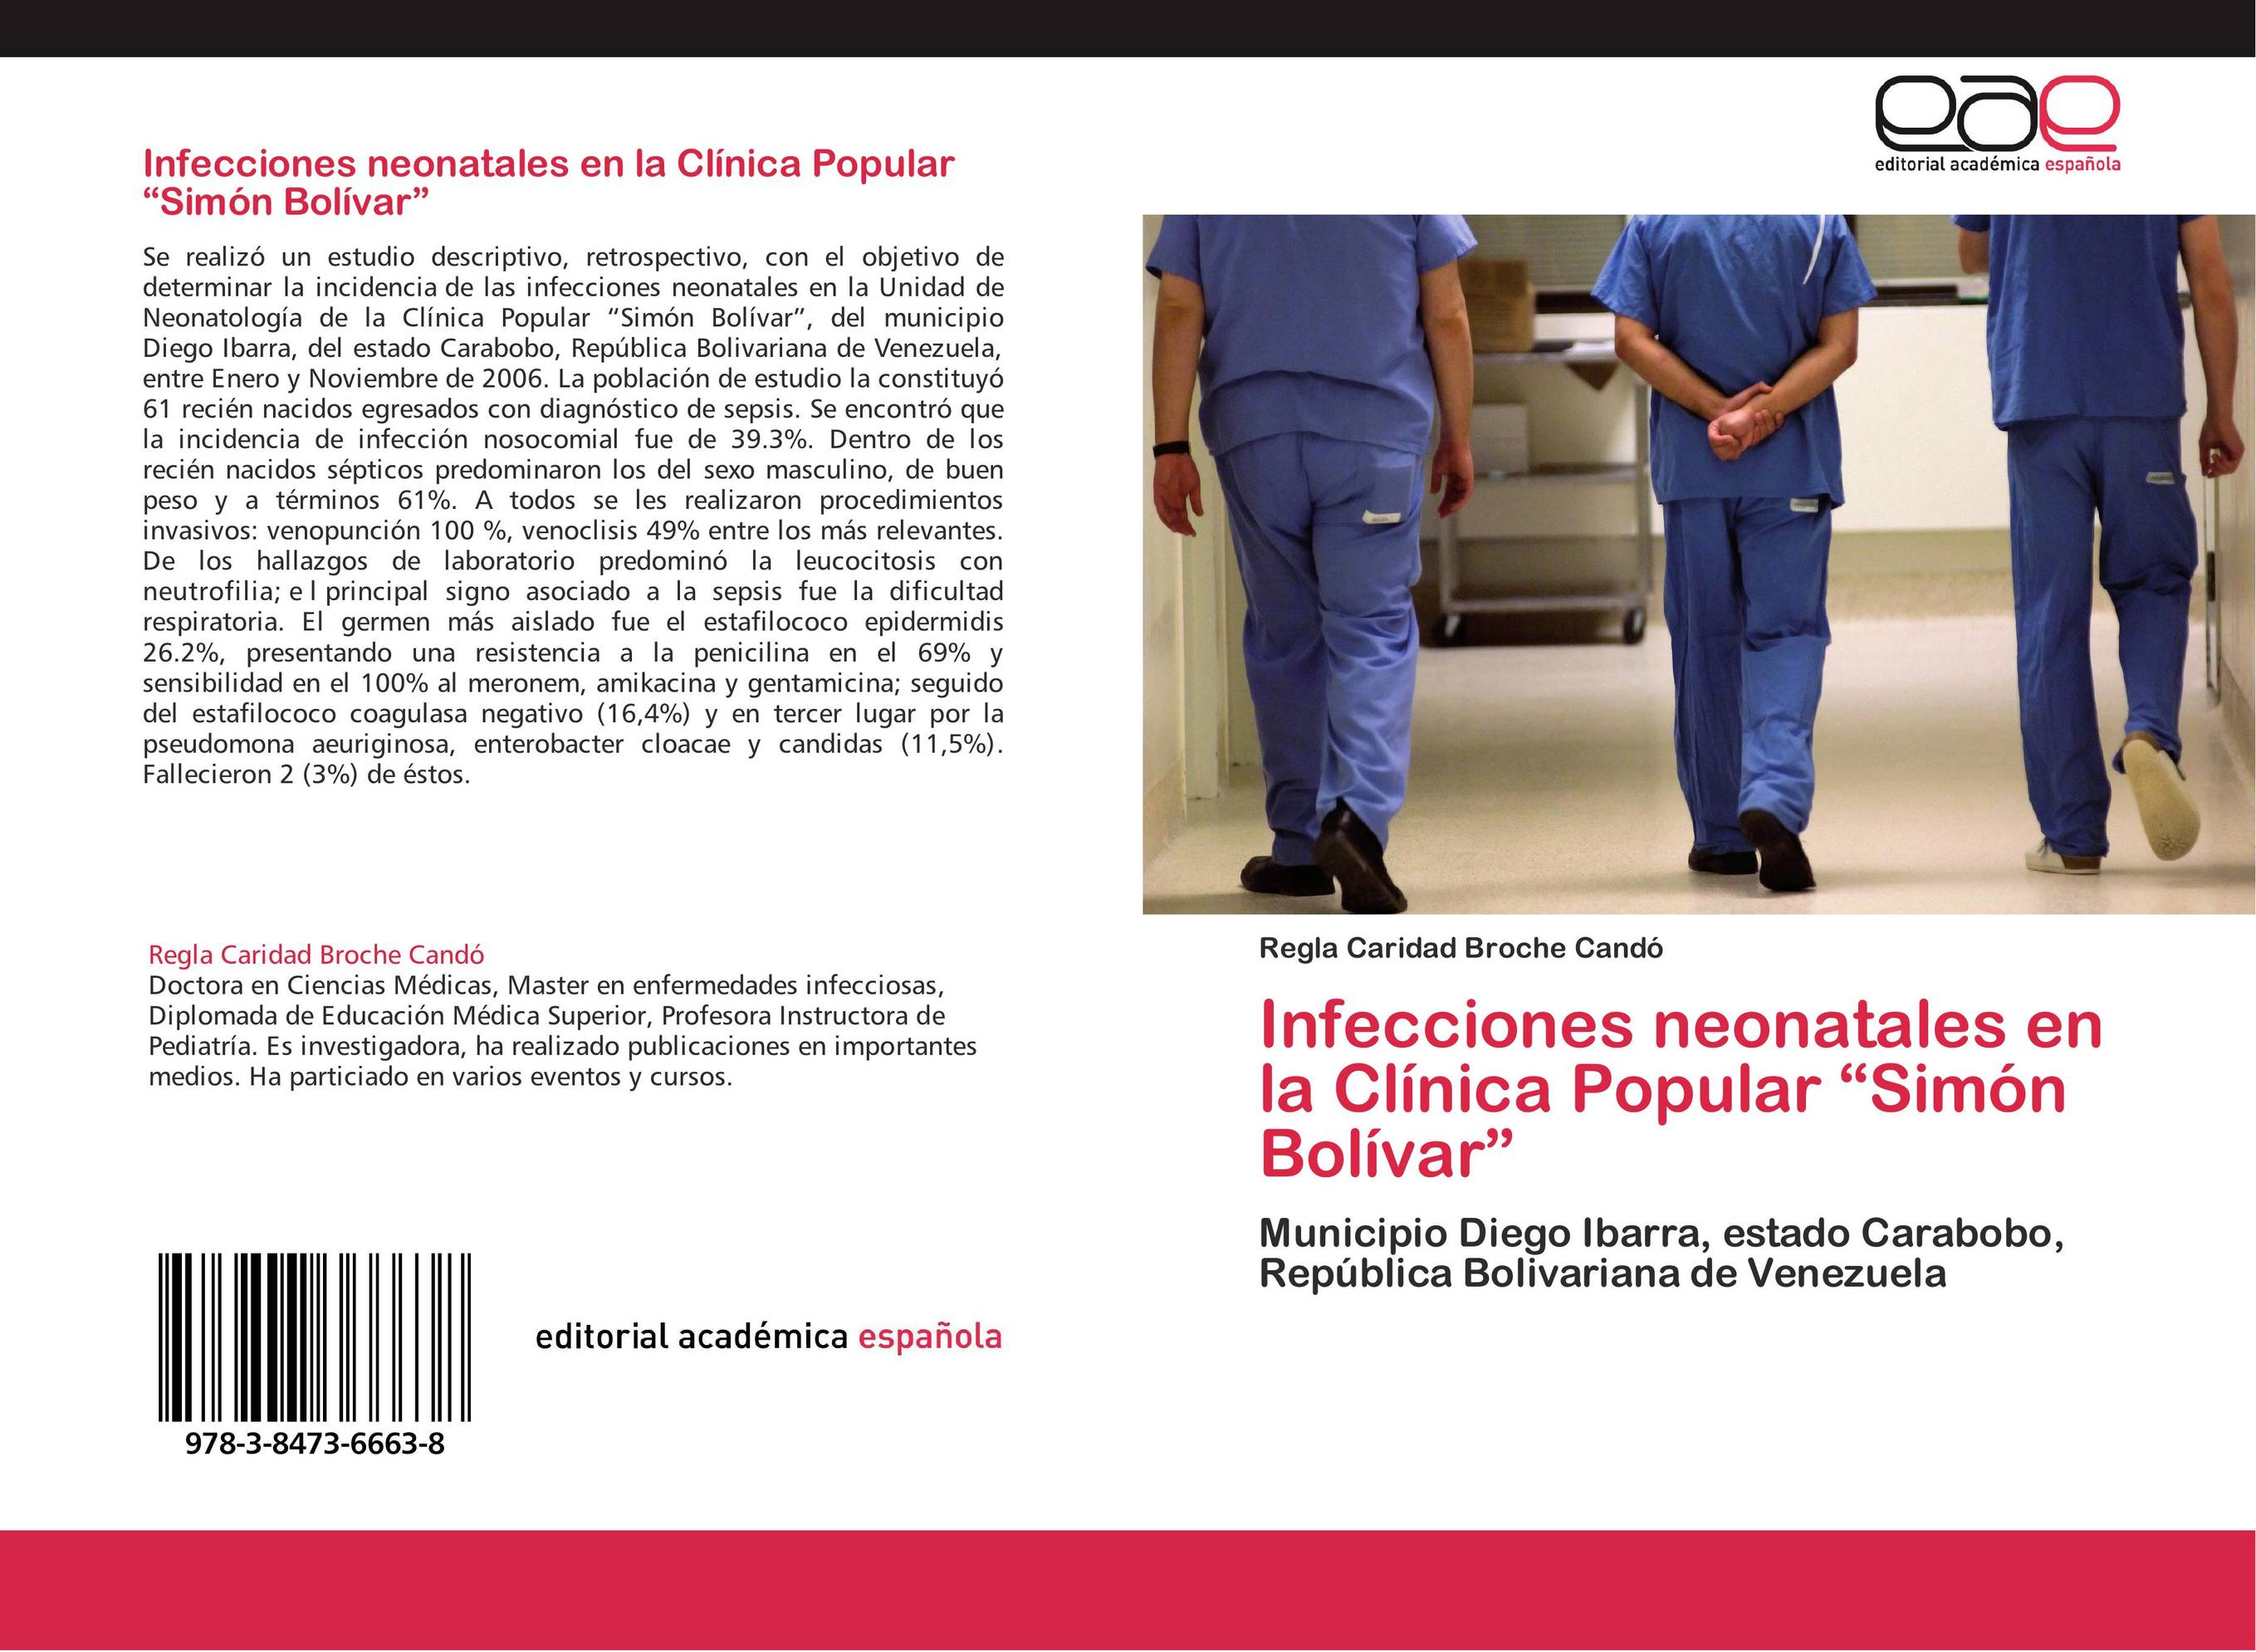 Infecciones neonatales en la Clínica Popular "Simón Bolívar"